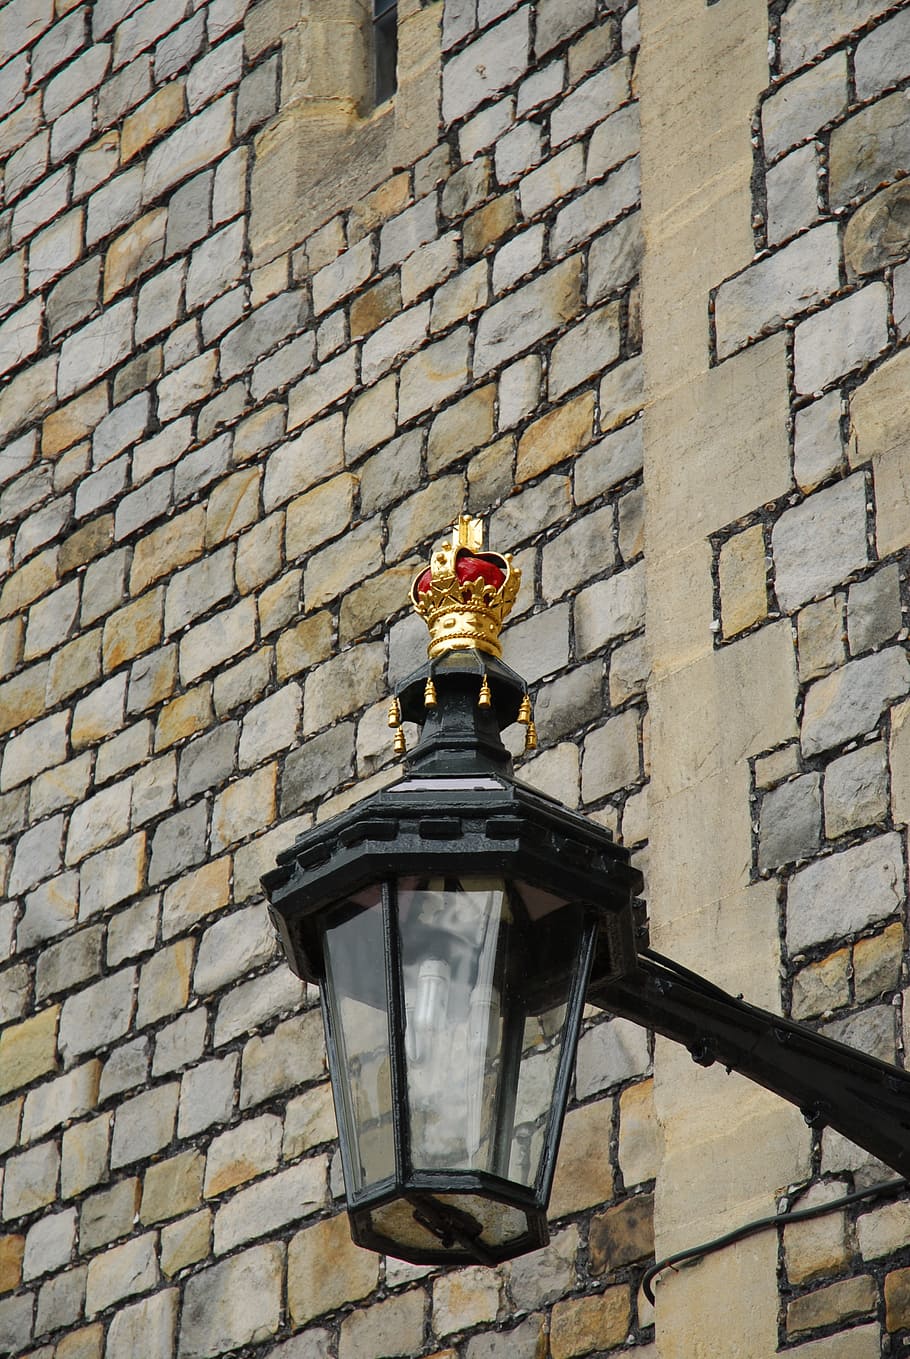 виндзорский замок, лампа, корона, англия, королевский, великобритания, виндзор, турист, монархия, построенная конструкция